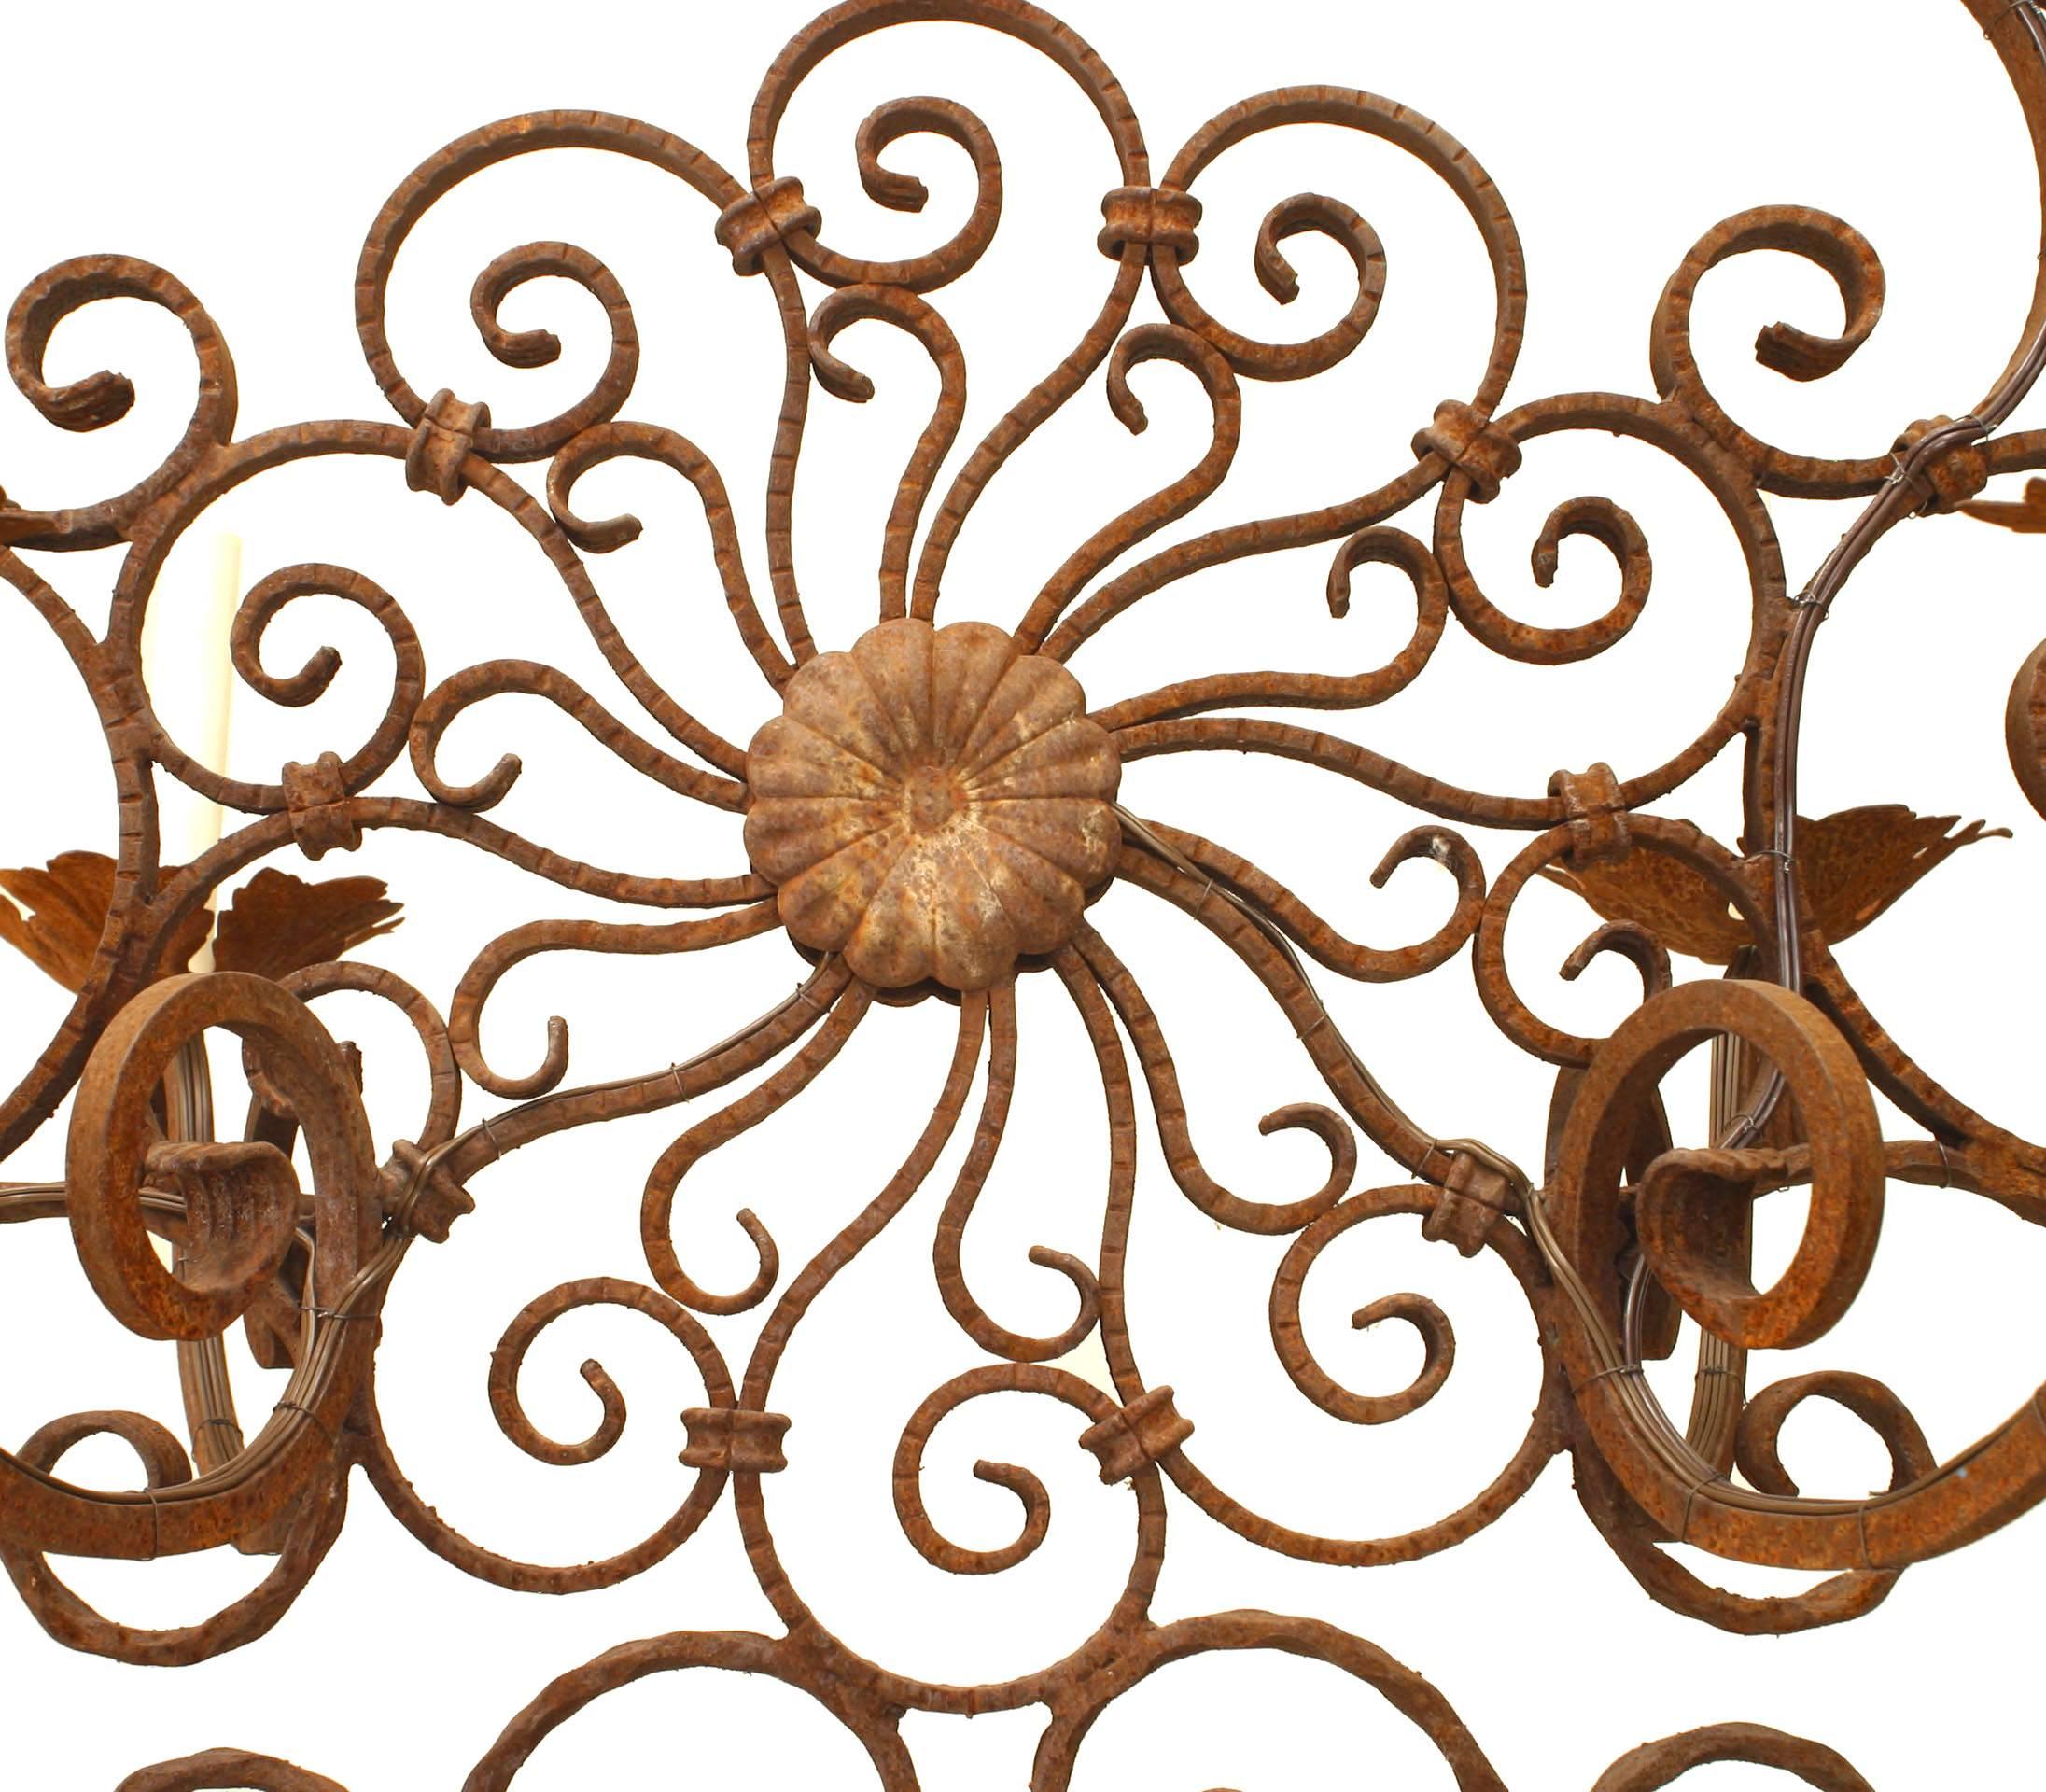 Lustre en fer forgé de style Renaissance italienne (19e-20e siècle) avec six bras à volutes émanant d'un centre ovale filigrane.
 